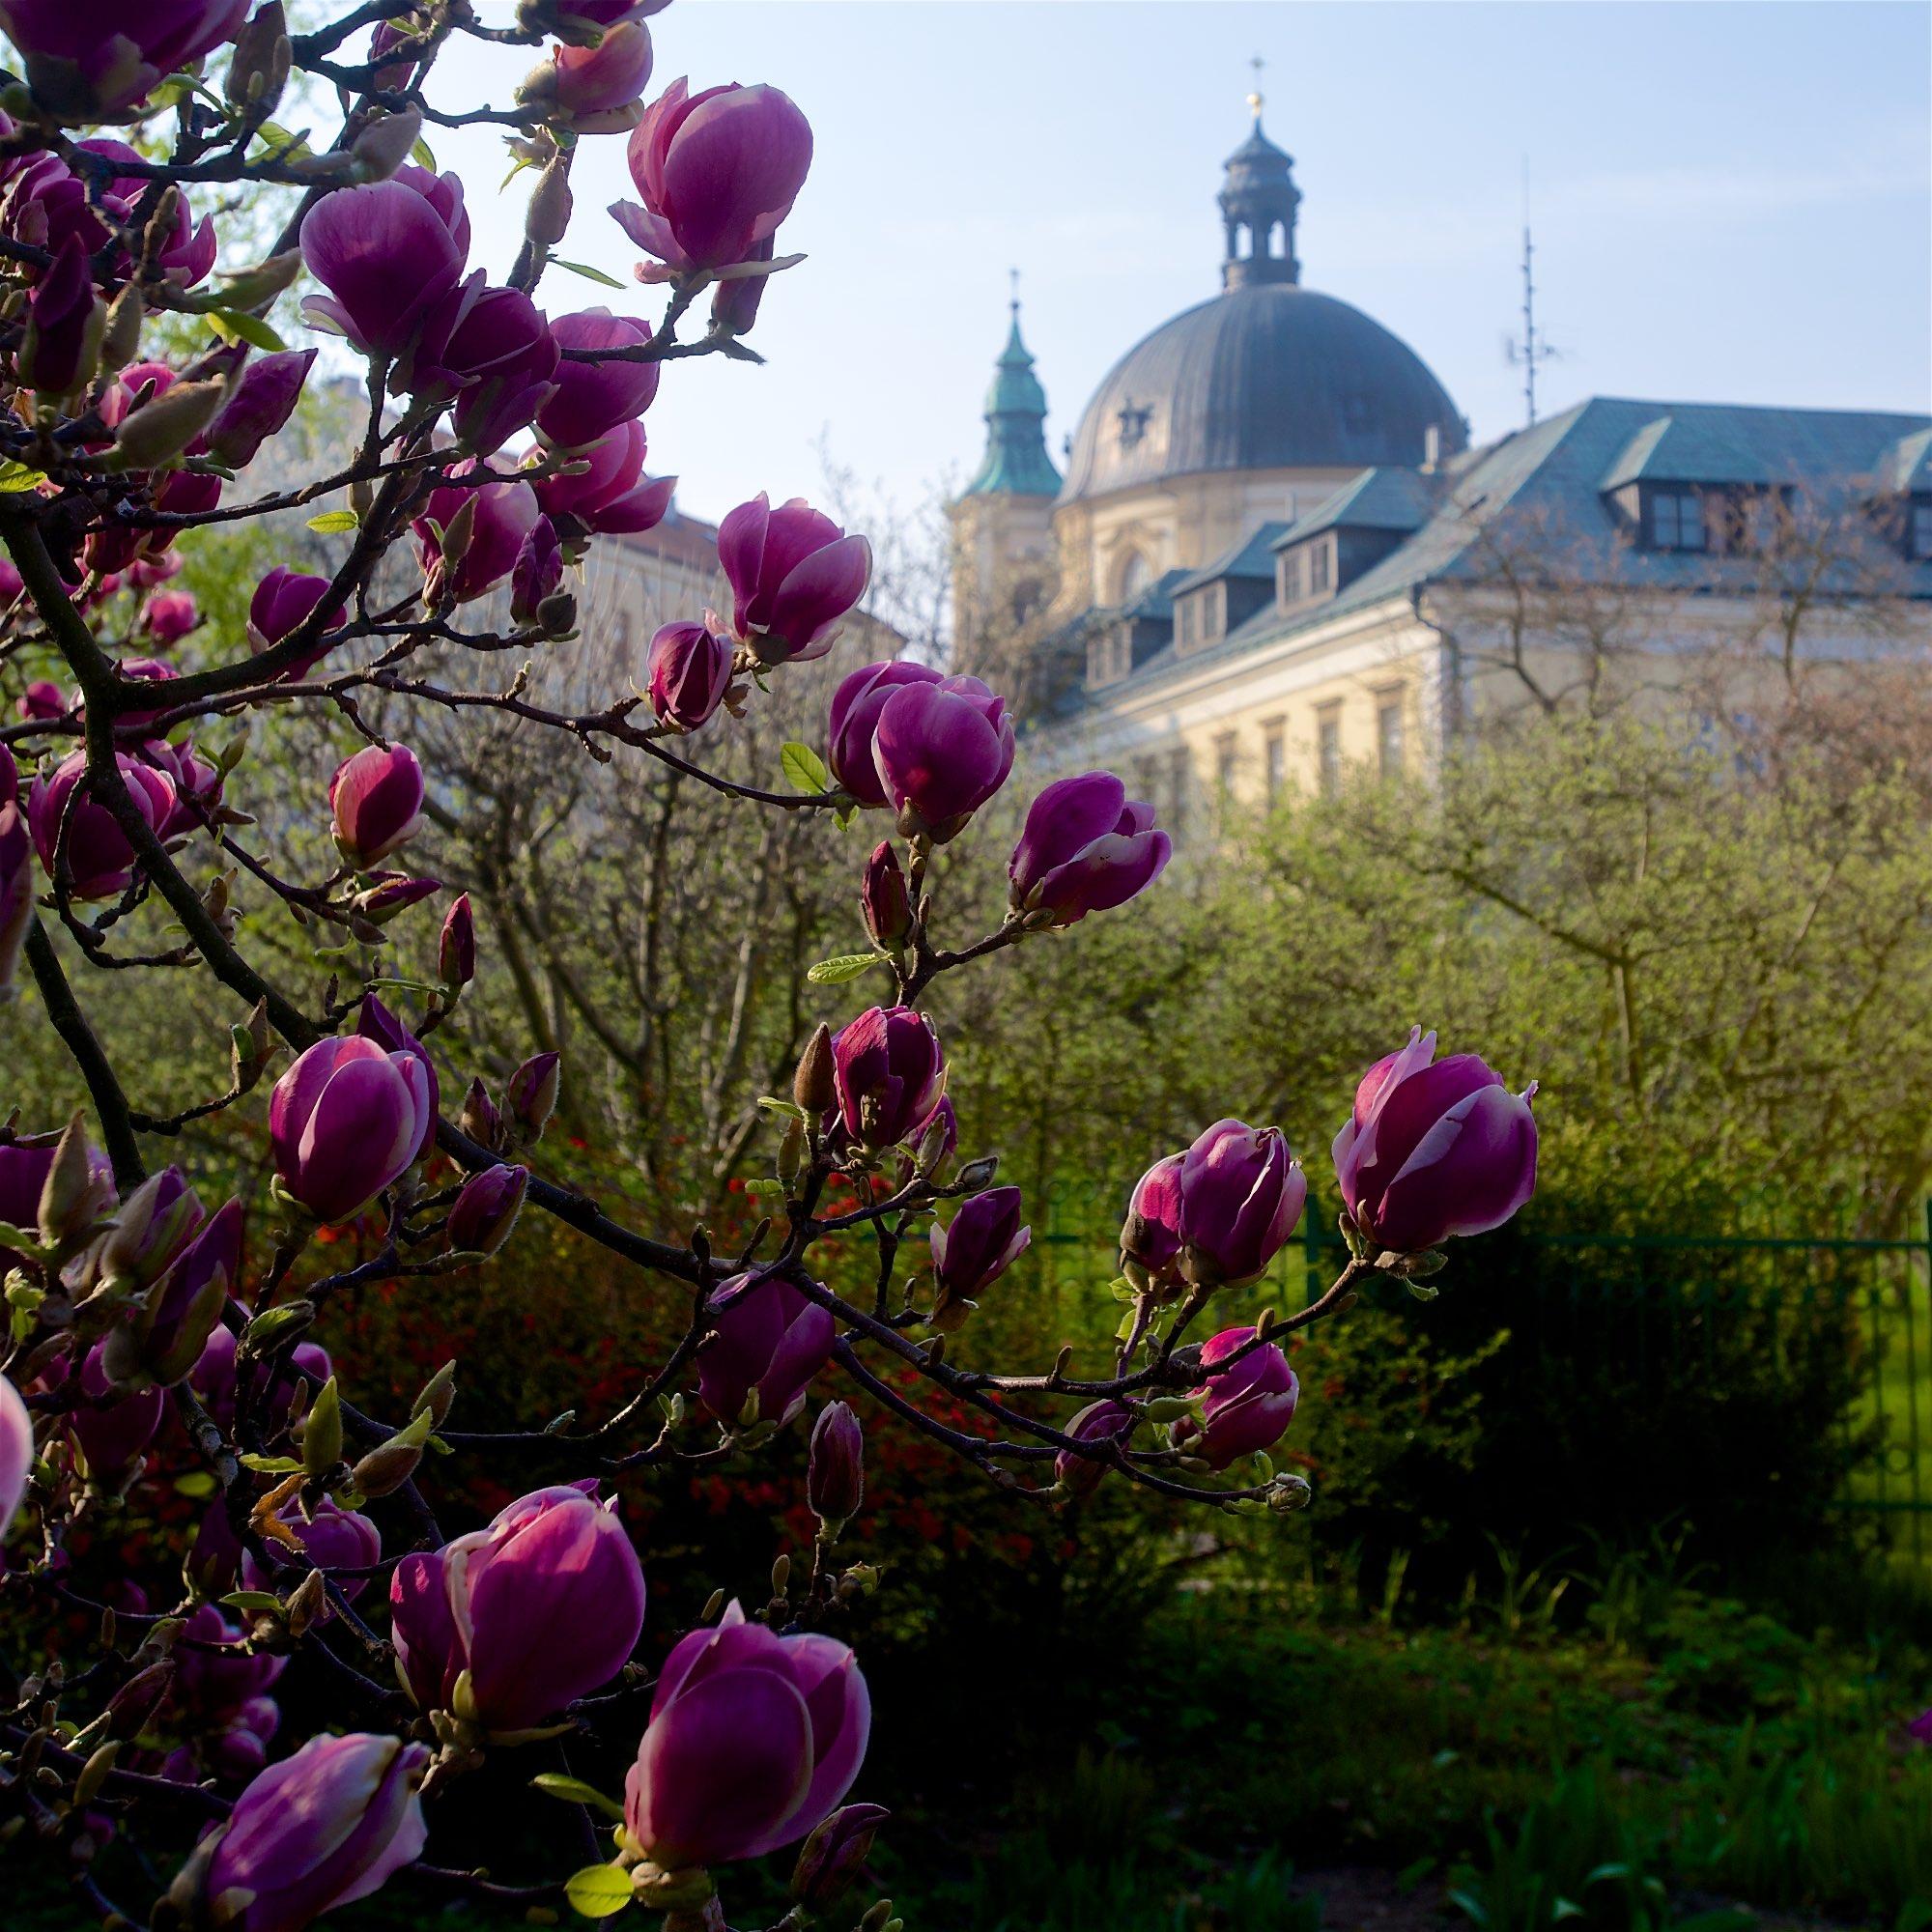 Avec l'arrivée du printemps, les magnolias en fleurs dans les jardins du palais brillent comme de magnifiques bijoux. - © Tomas Vrtal